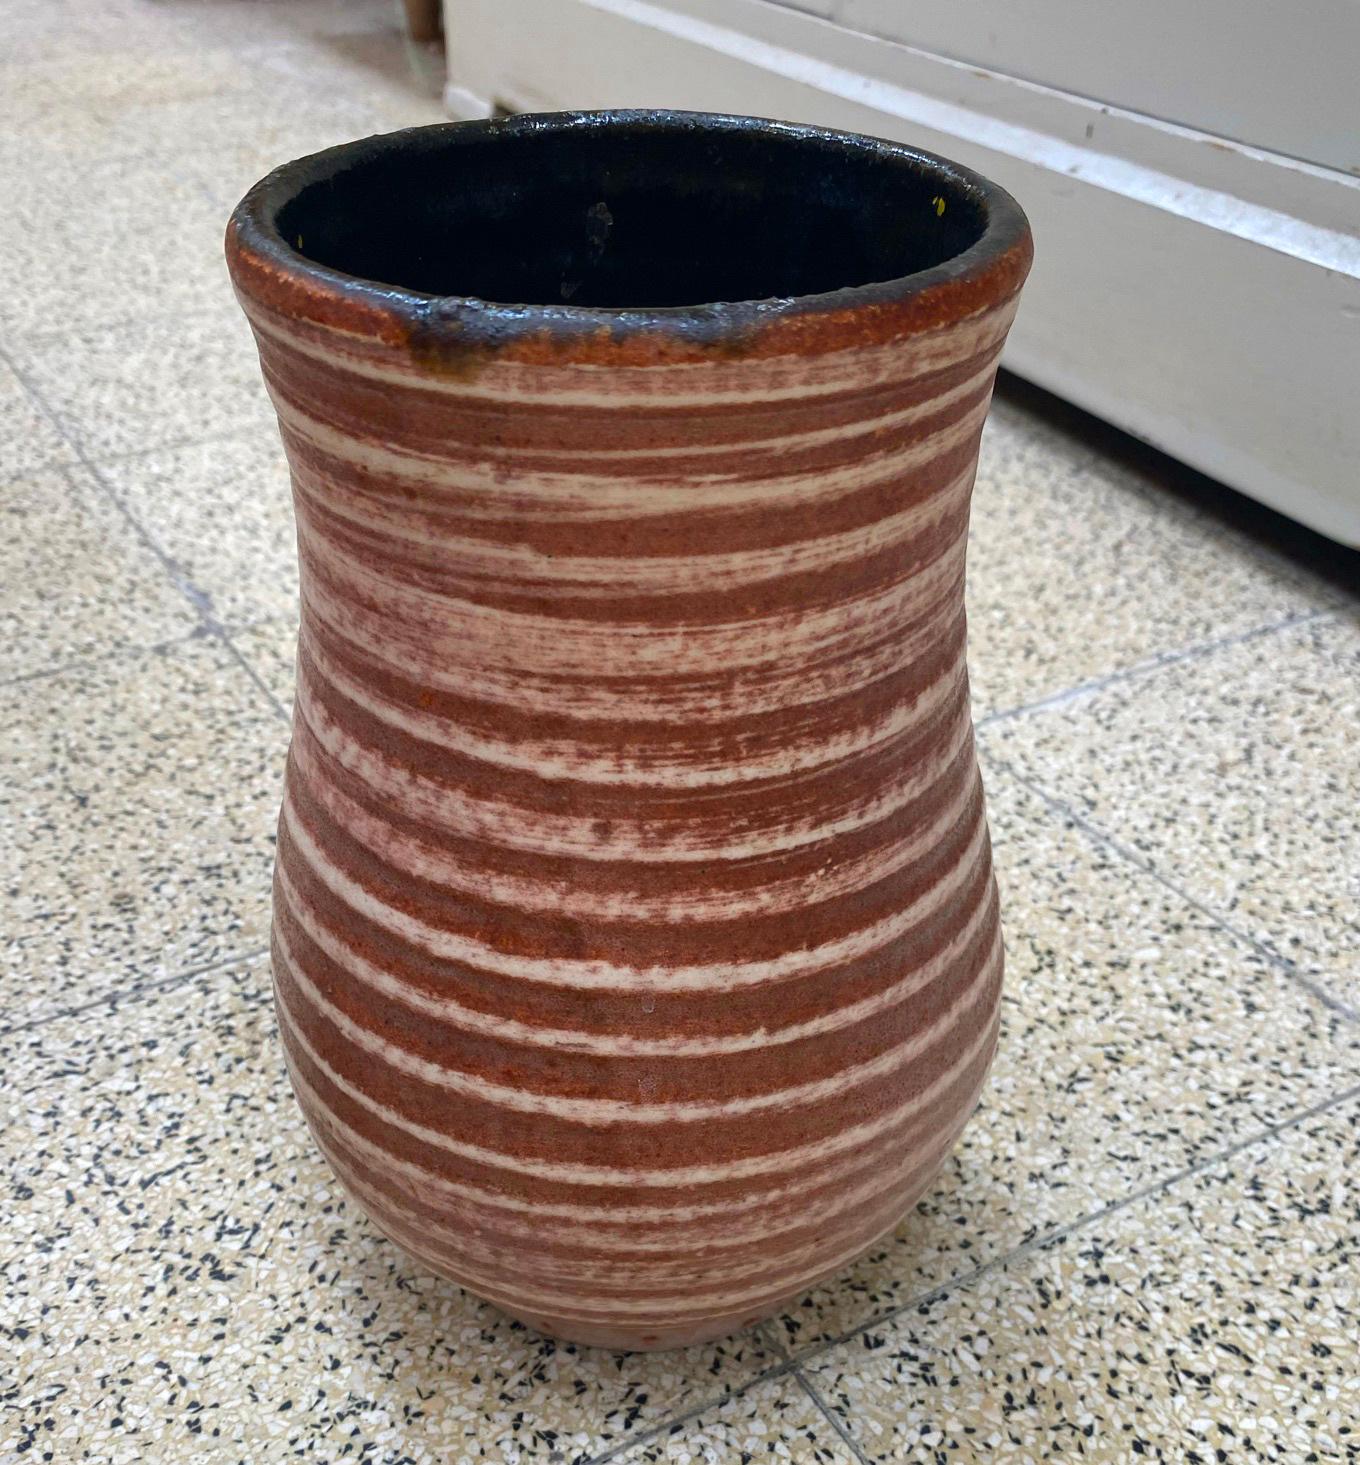 Accolay-Vase, um 1960
die Farbe ist rosa/braun.